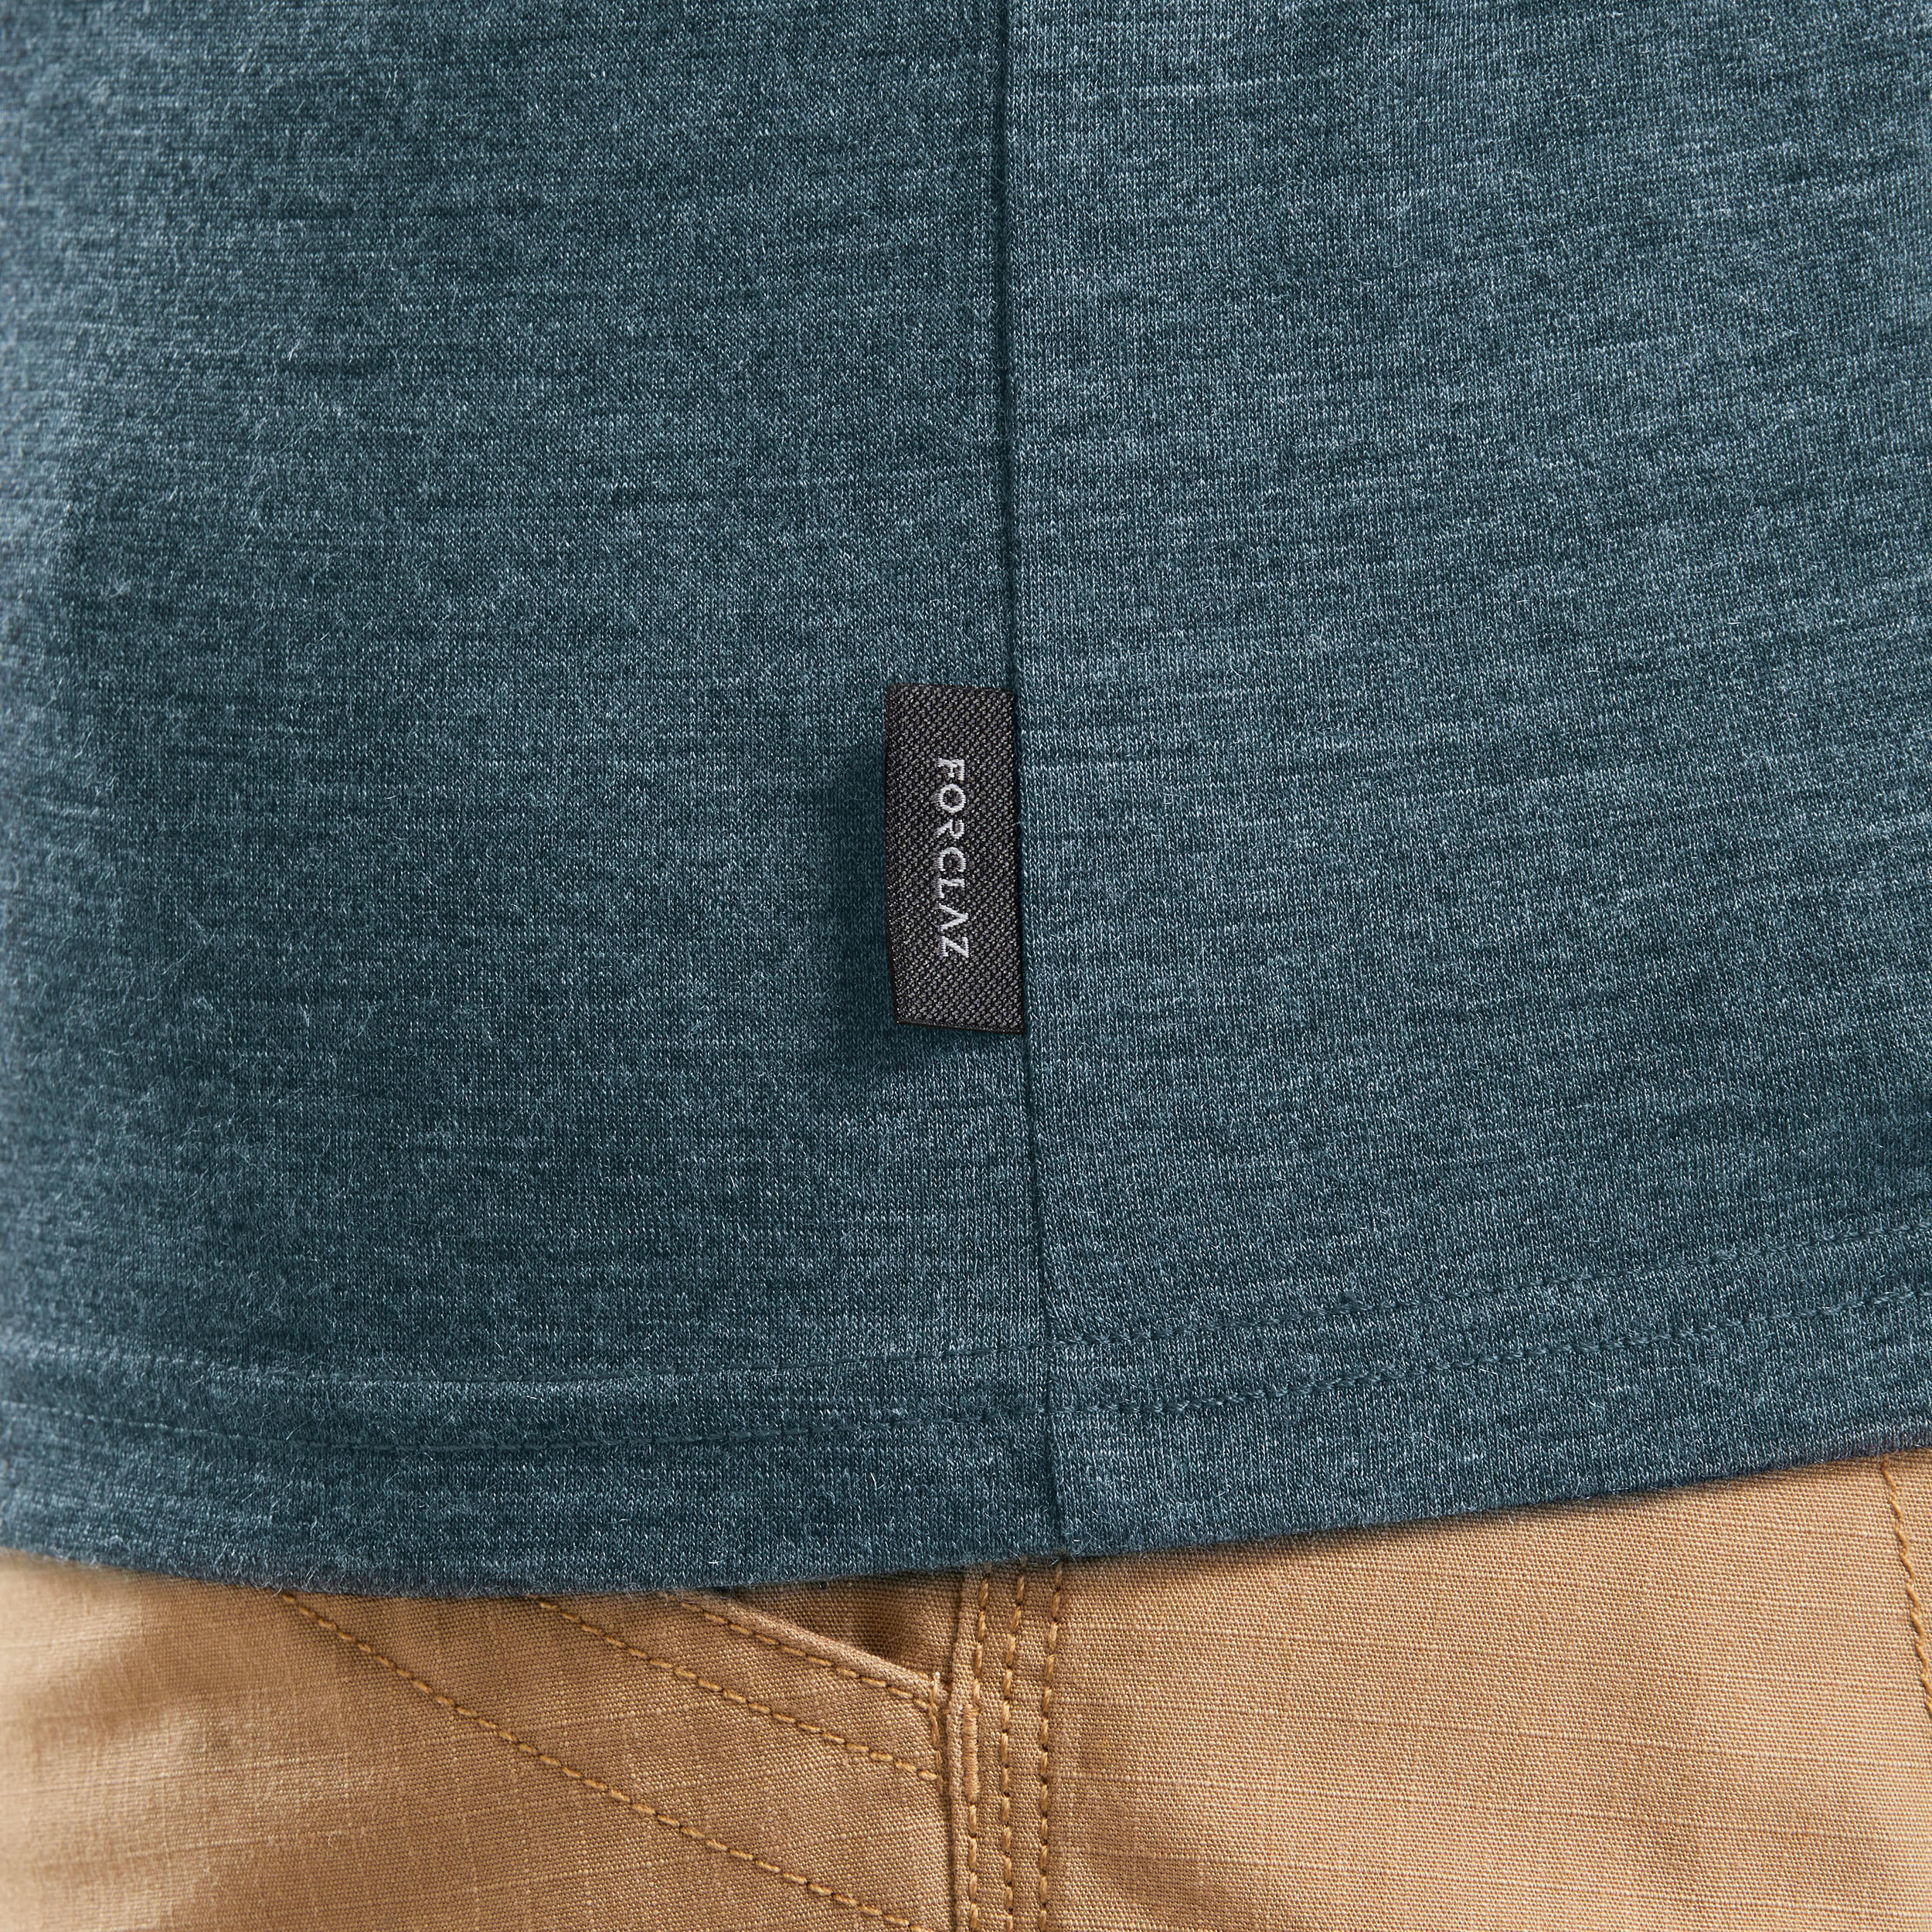 Men’s Long-sleeved Travel Trekking Merino Wool Polo Shirt - TRAVEL 500 Blue 10/10